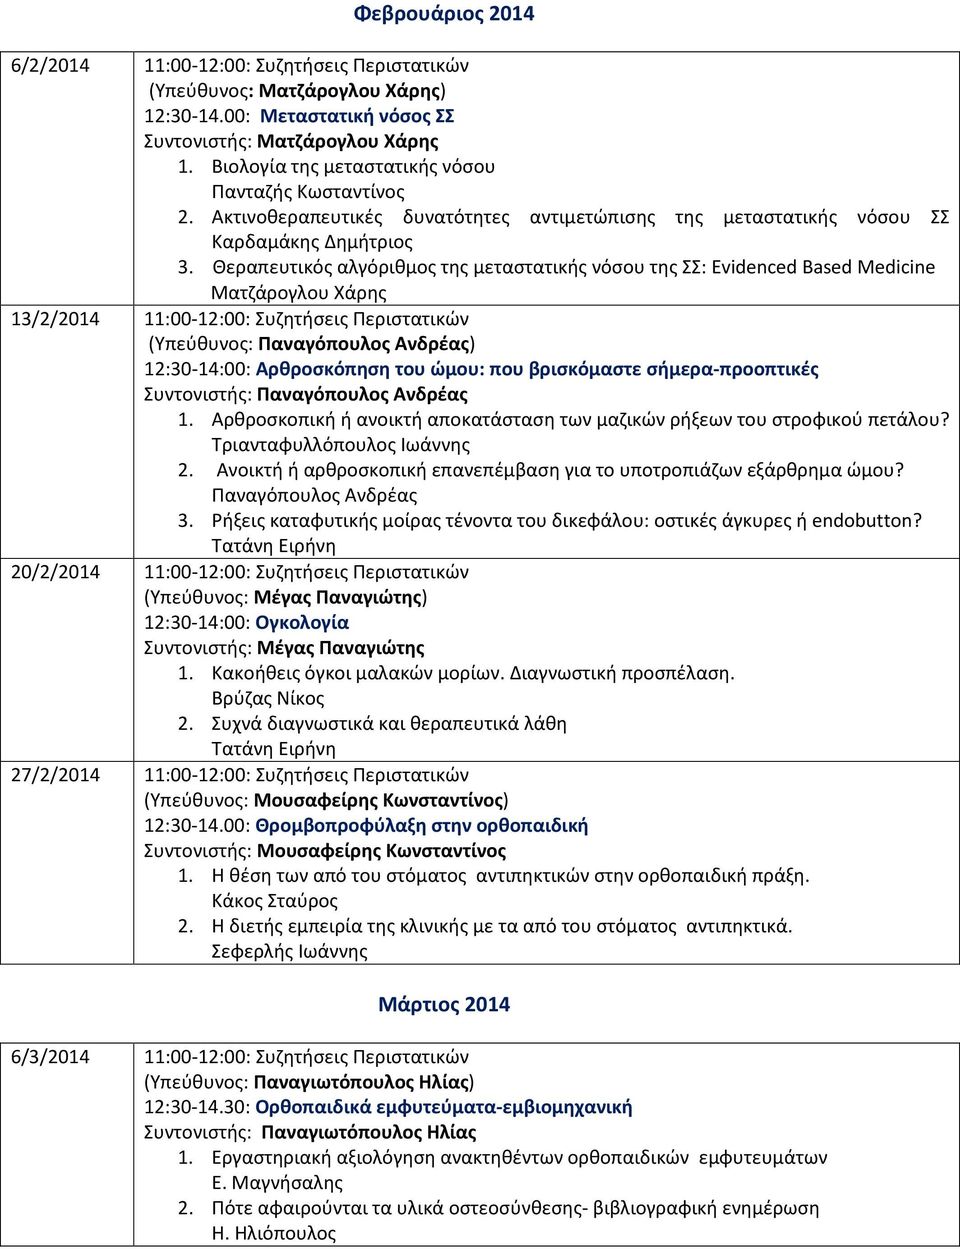 Θεραπευτικός αλγόριθμος της μεταστατικής νόσου της ΣΣ: Evidenced Based Medicine Ματζάρογλου Χάρης 13/2/2014 11:00-12:00: Συζητήσεις Περιστατικών 12:30-14:00: Αρθροσκόπηση του ώμου: που βρισκόμαστε